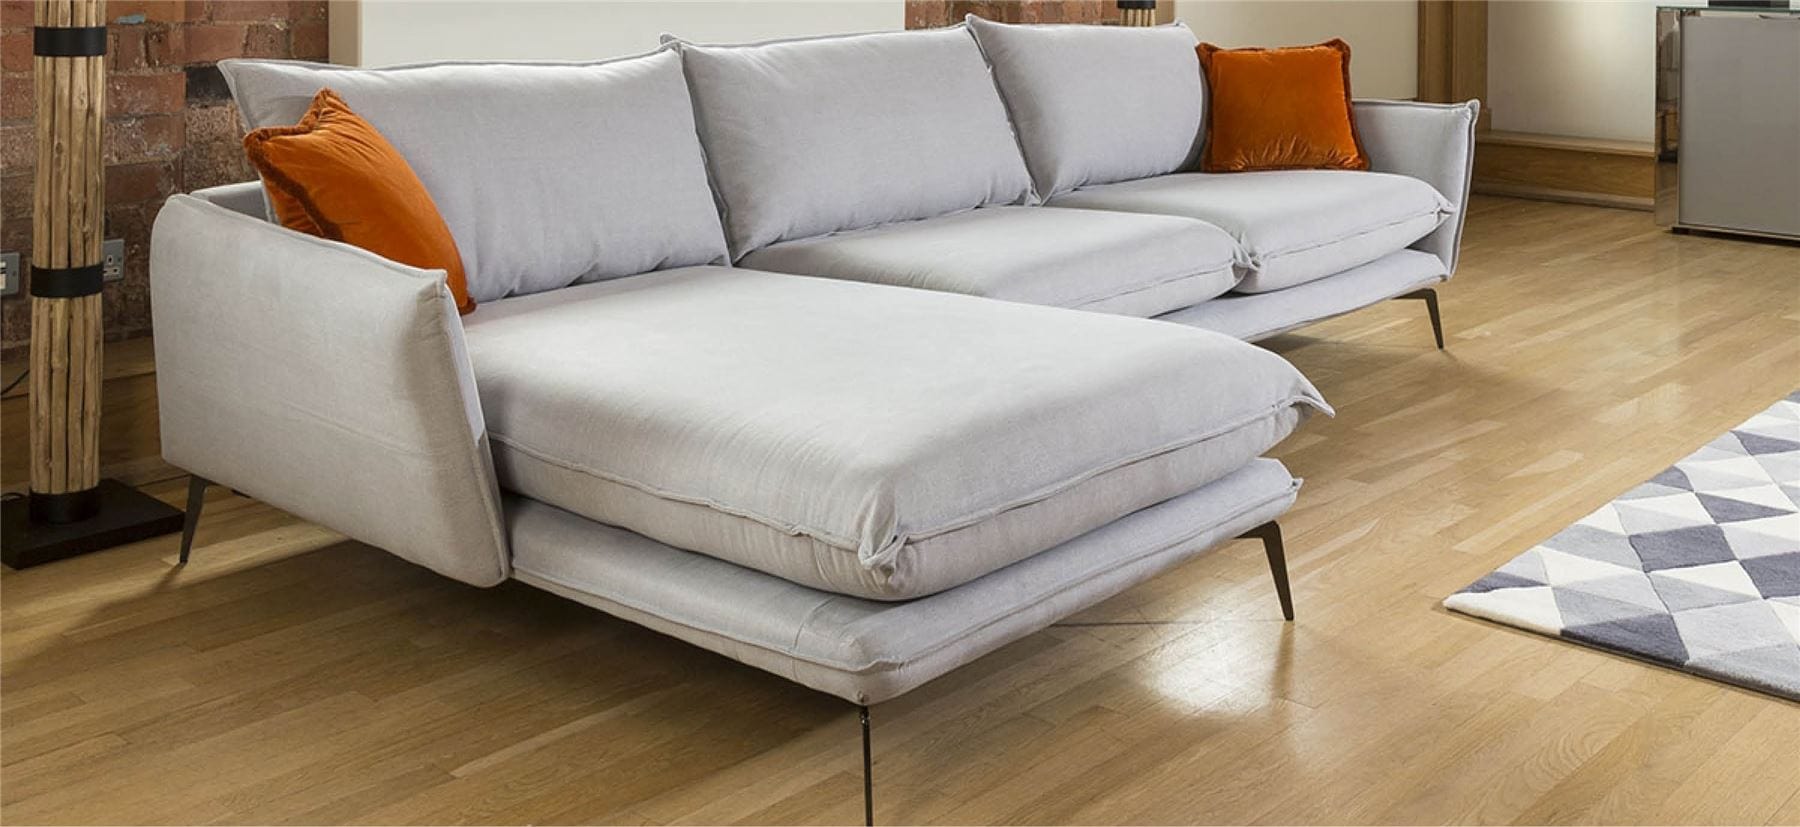 Quatropi Rachel Luxury L Shape Corner Modular Sofa Many Fabrics 3.35 x 1.6m